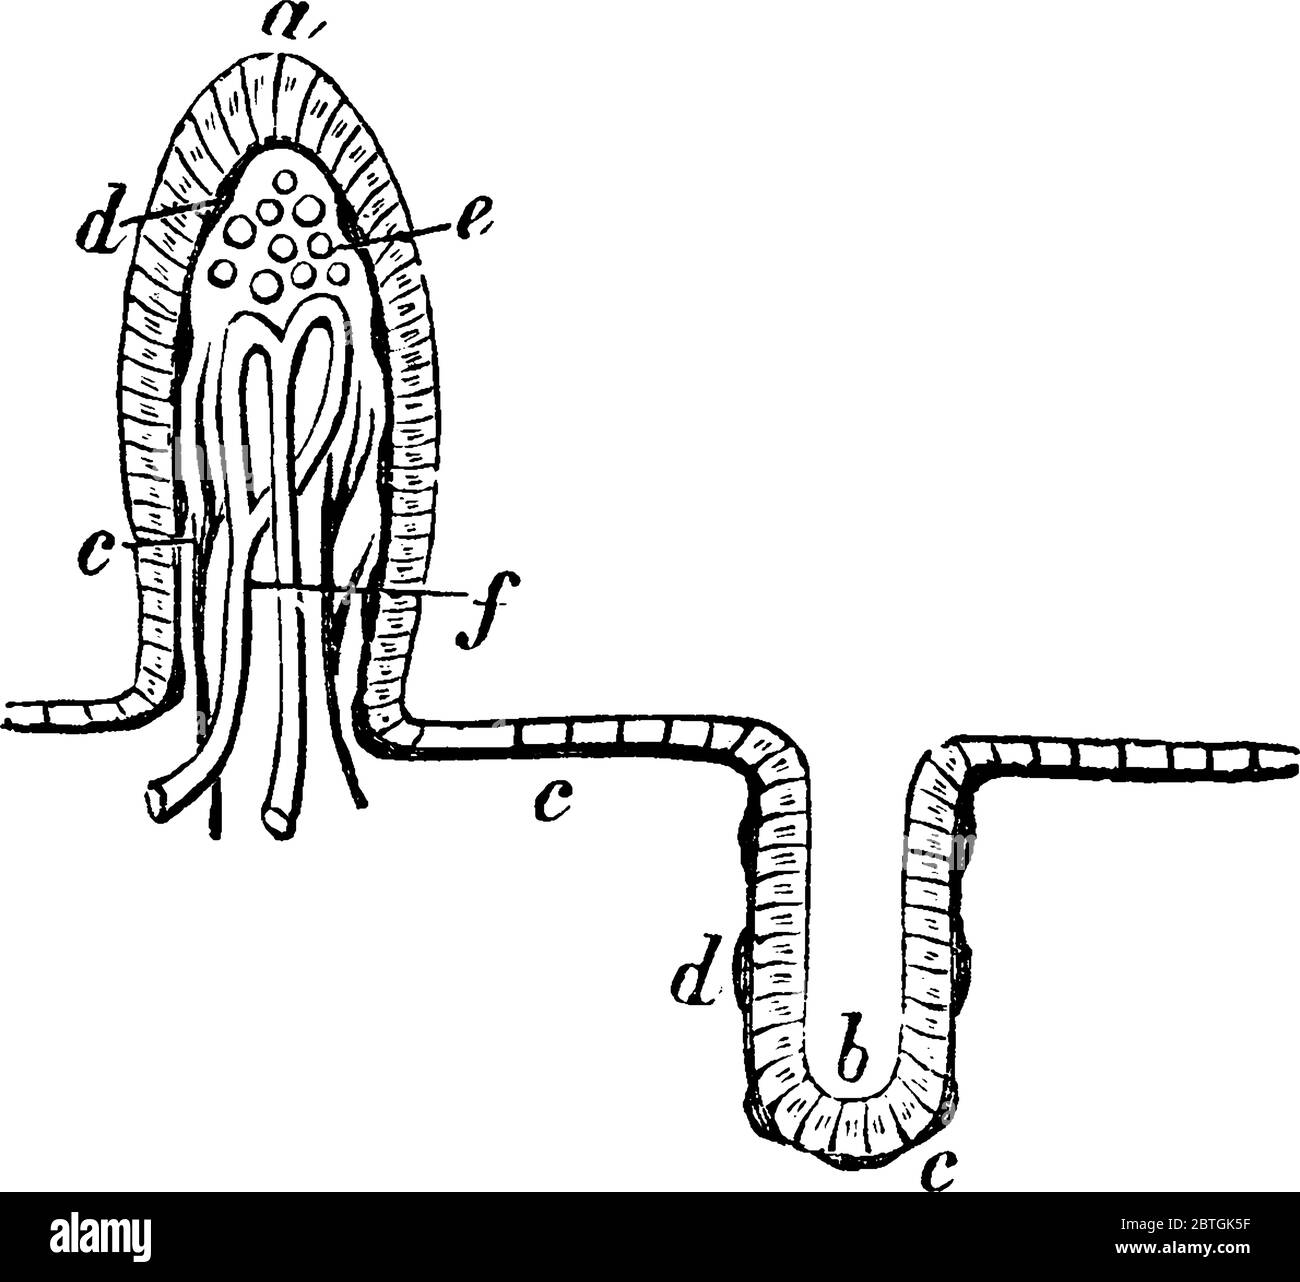 Sezione della mucosa dell'intestino tenue, con le sue parti etichettate, disegno di linea vintage o illustrazione dell'incisione. Illustrazione Vettoriale